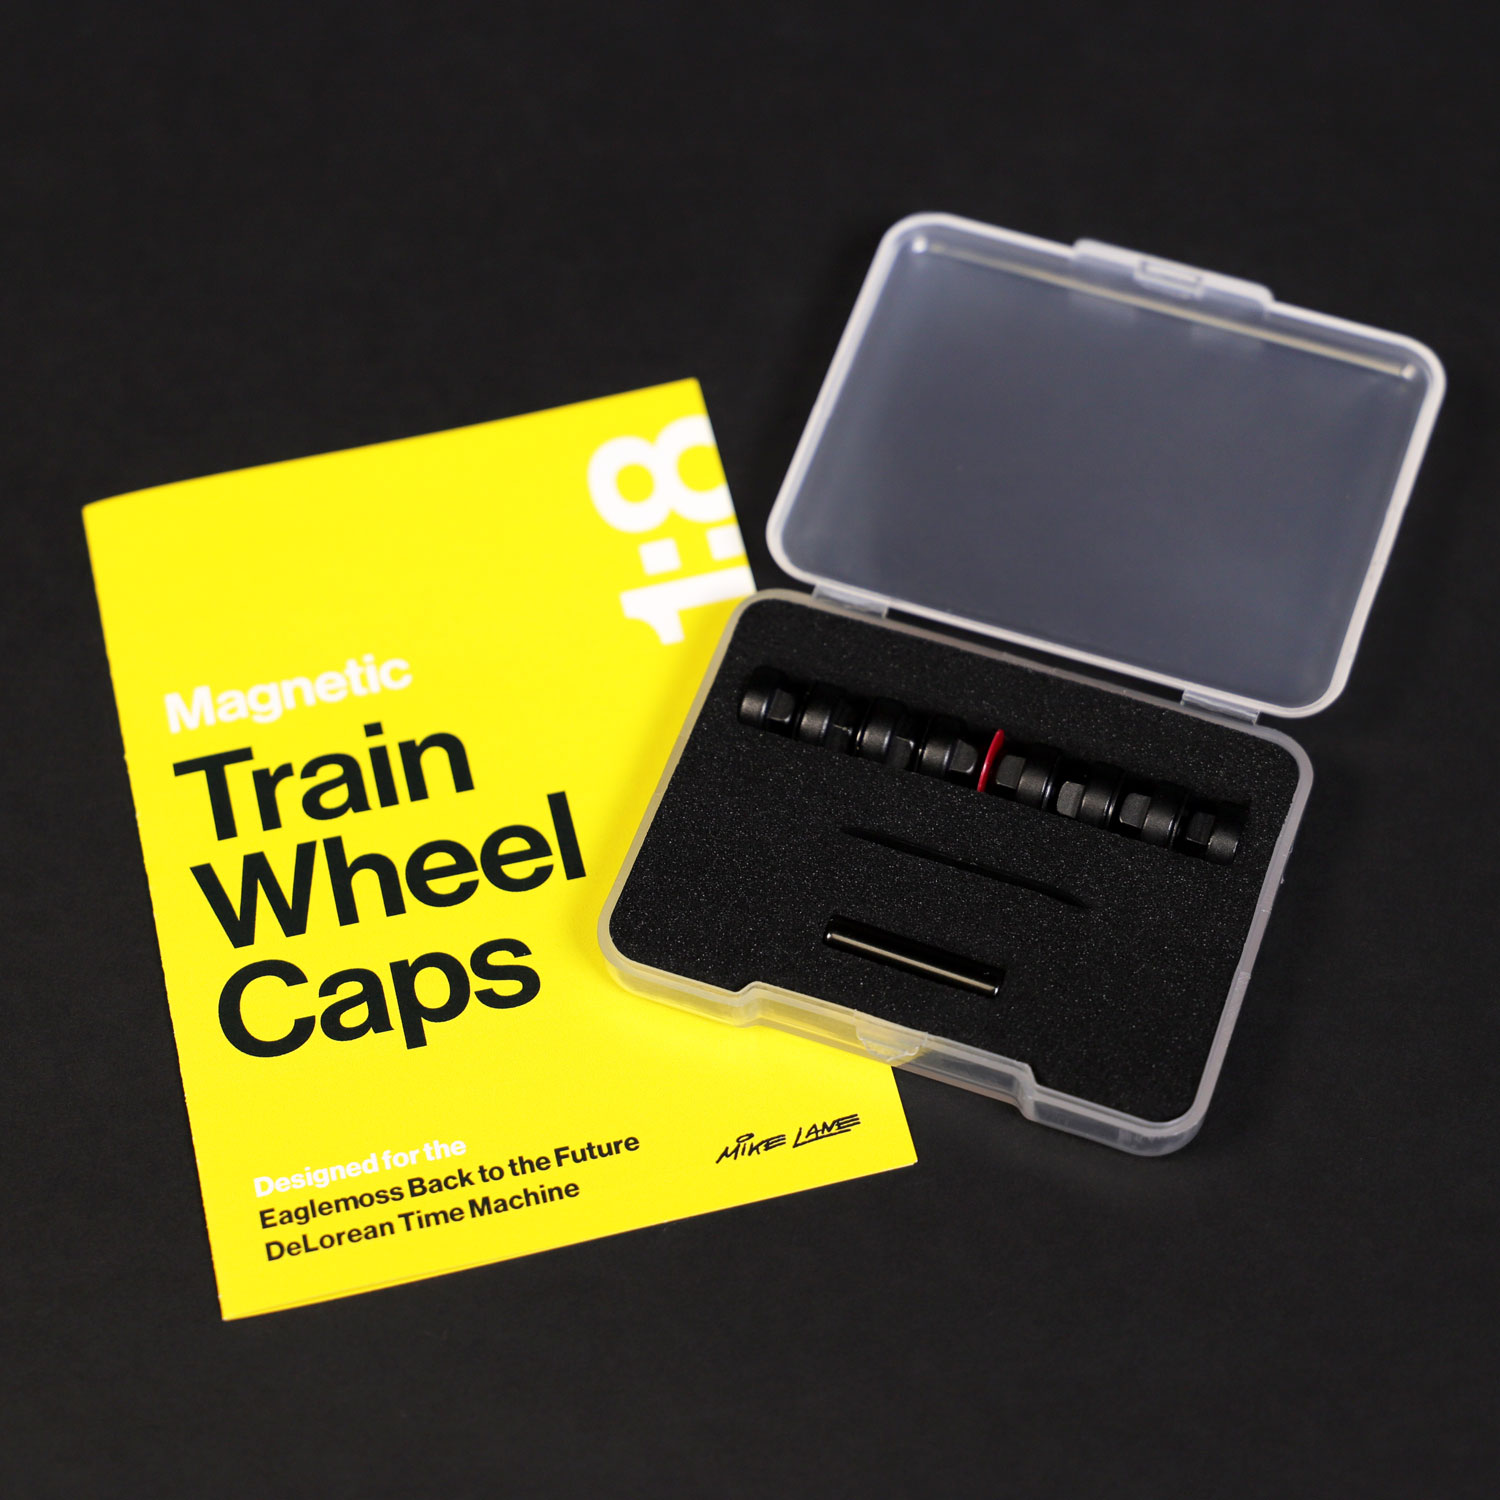 Magnetic Train Wheel Caps mod for Eaglemoss DeLorean model